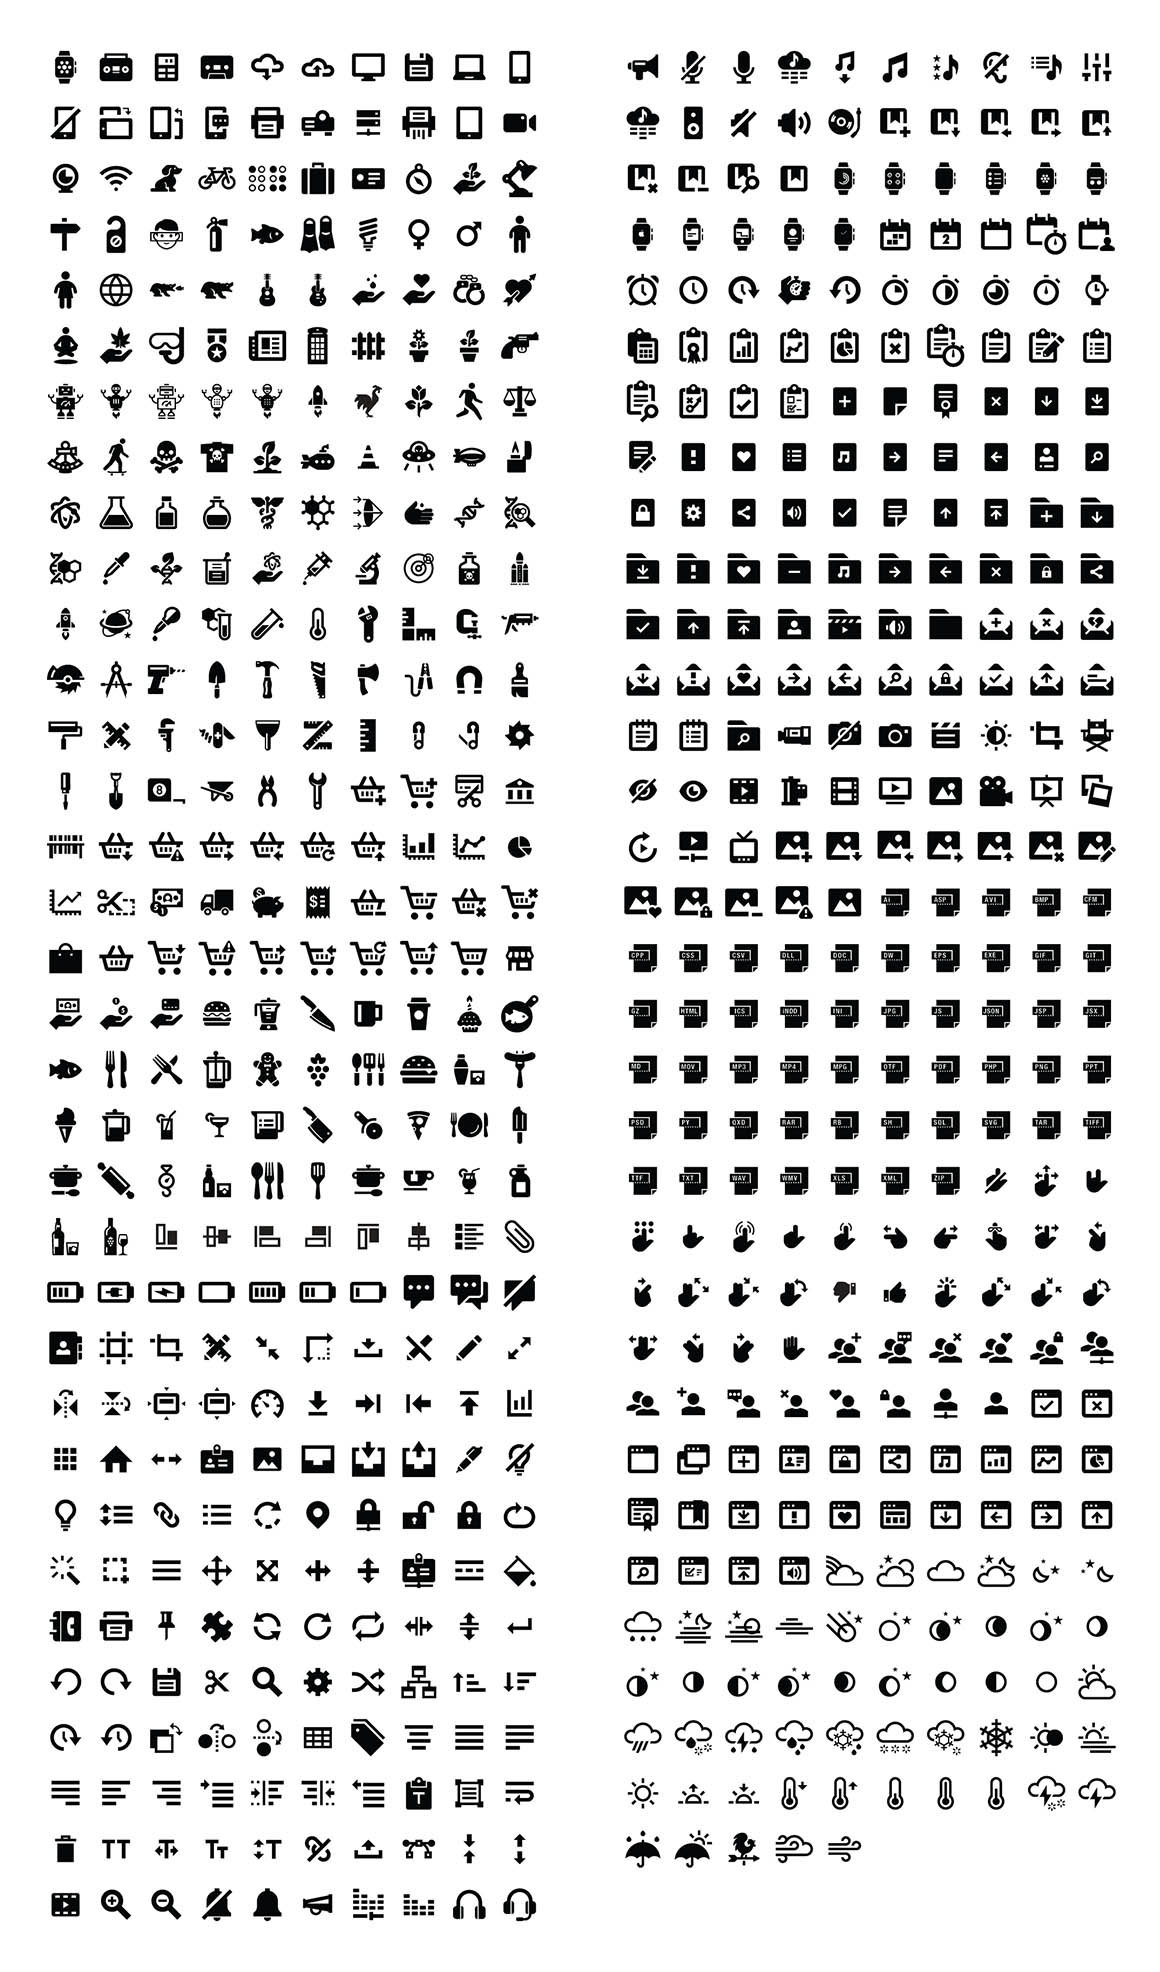 650 Free Glyph Icons - Dealjumbo